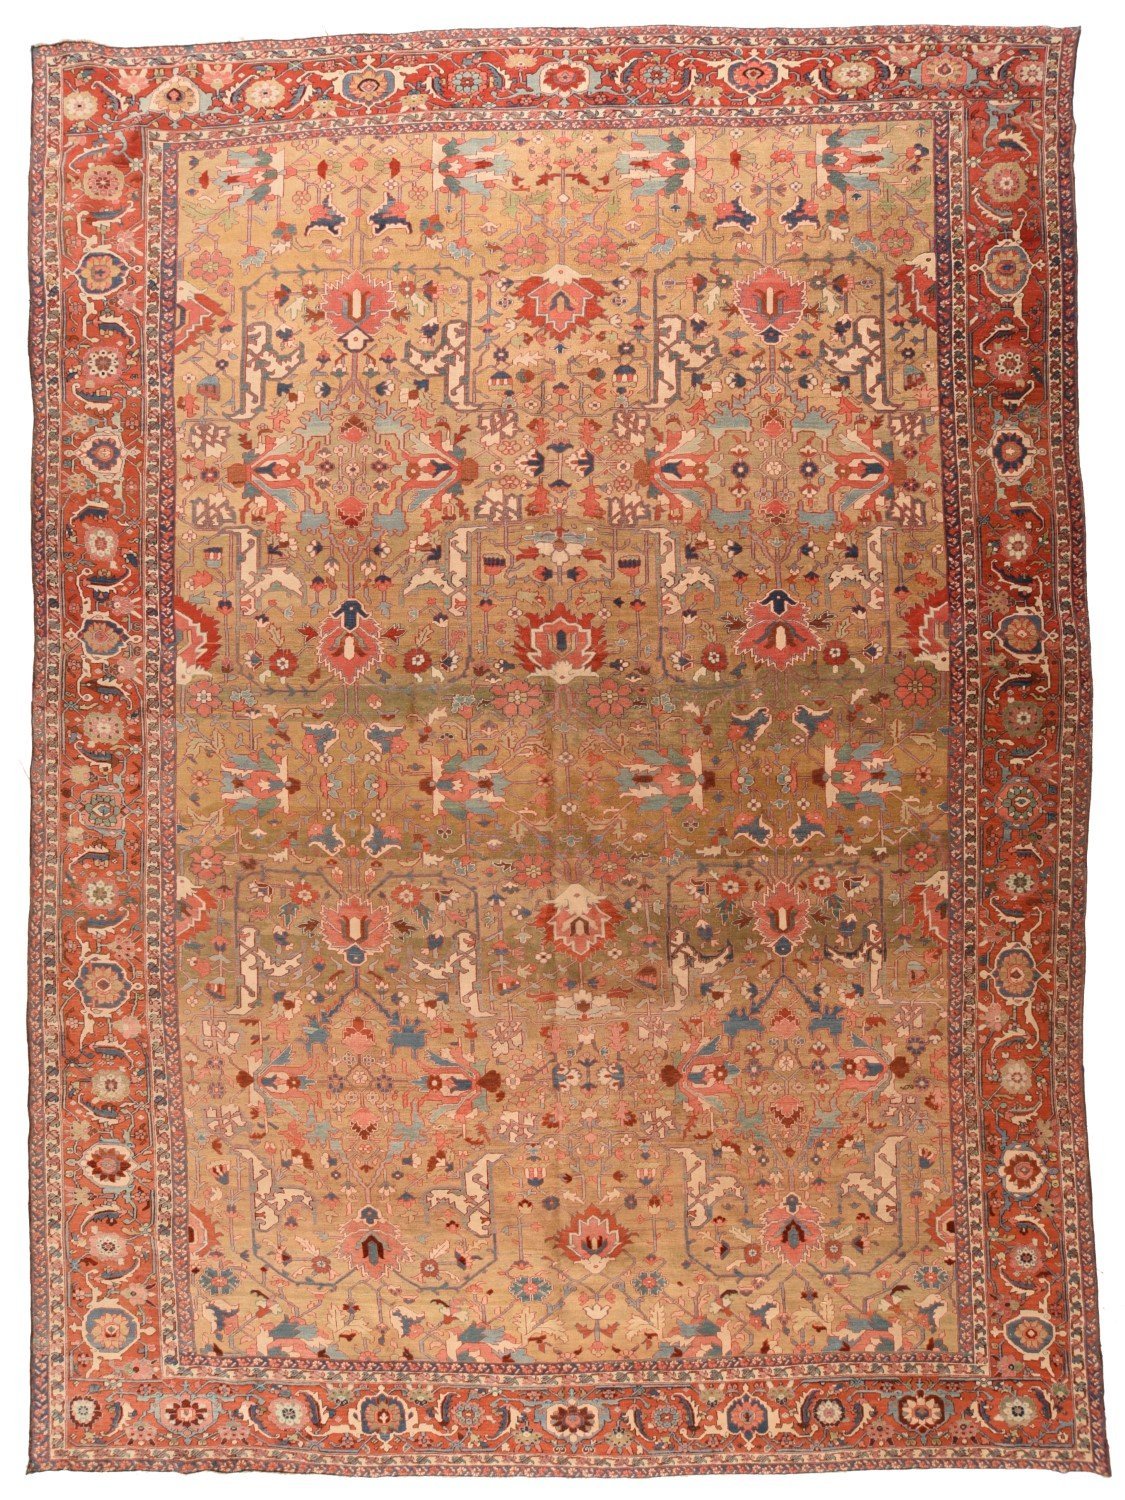 Hand Made Bakhshaish Persian Rug